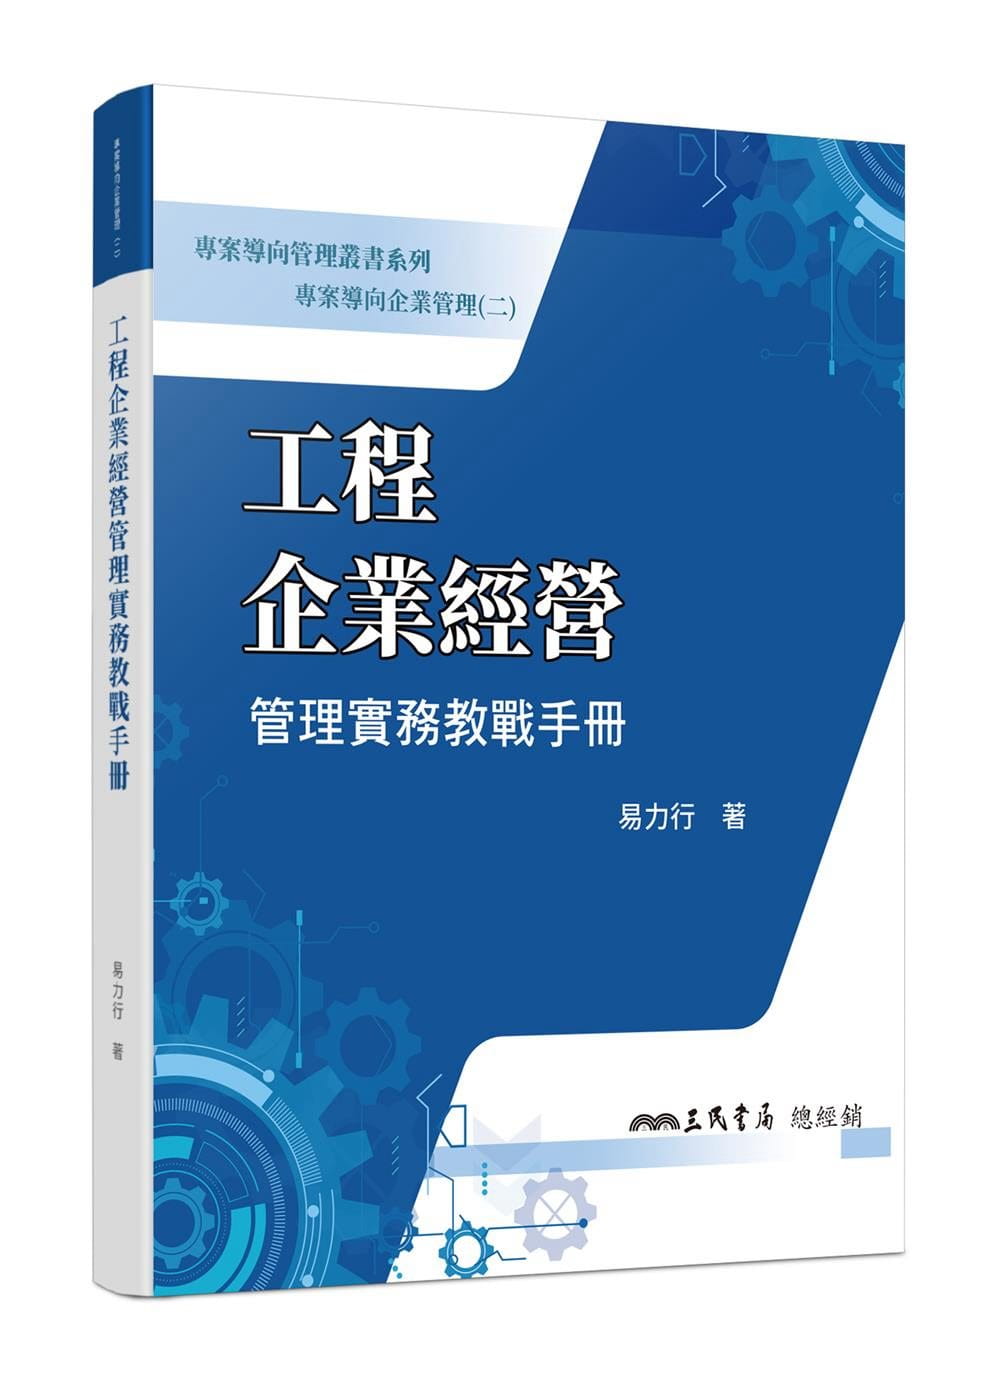 專案導向企業管理(二)工程企業經營管理實務教戰手冊